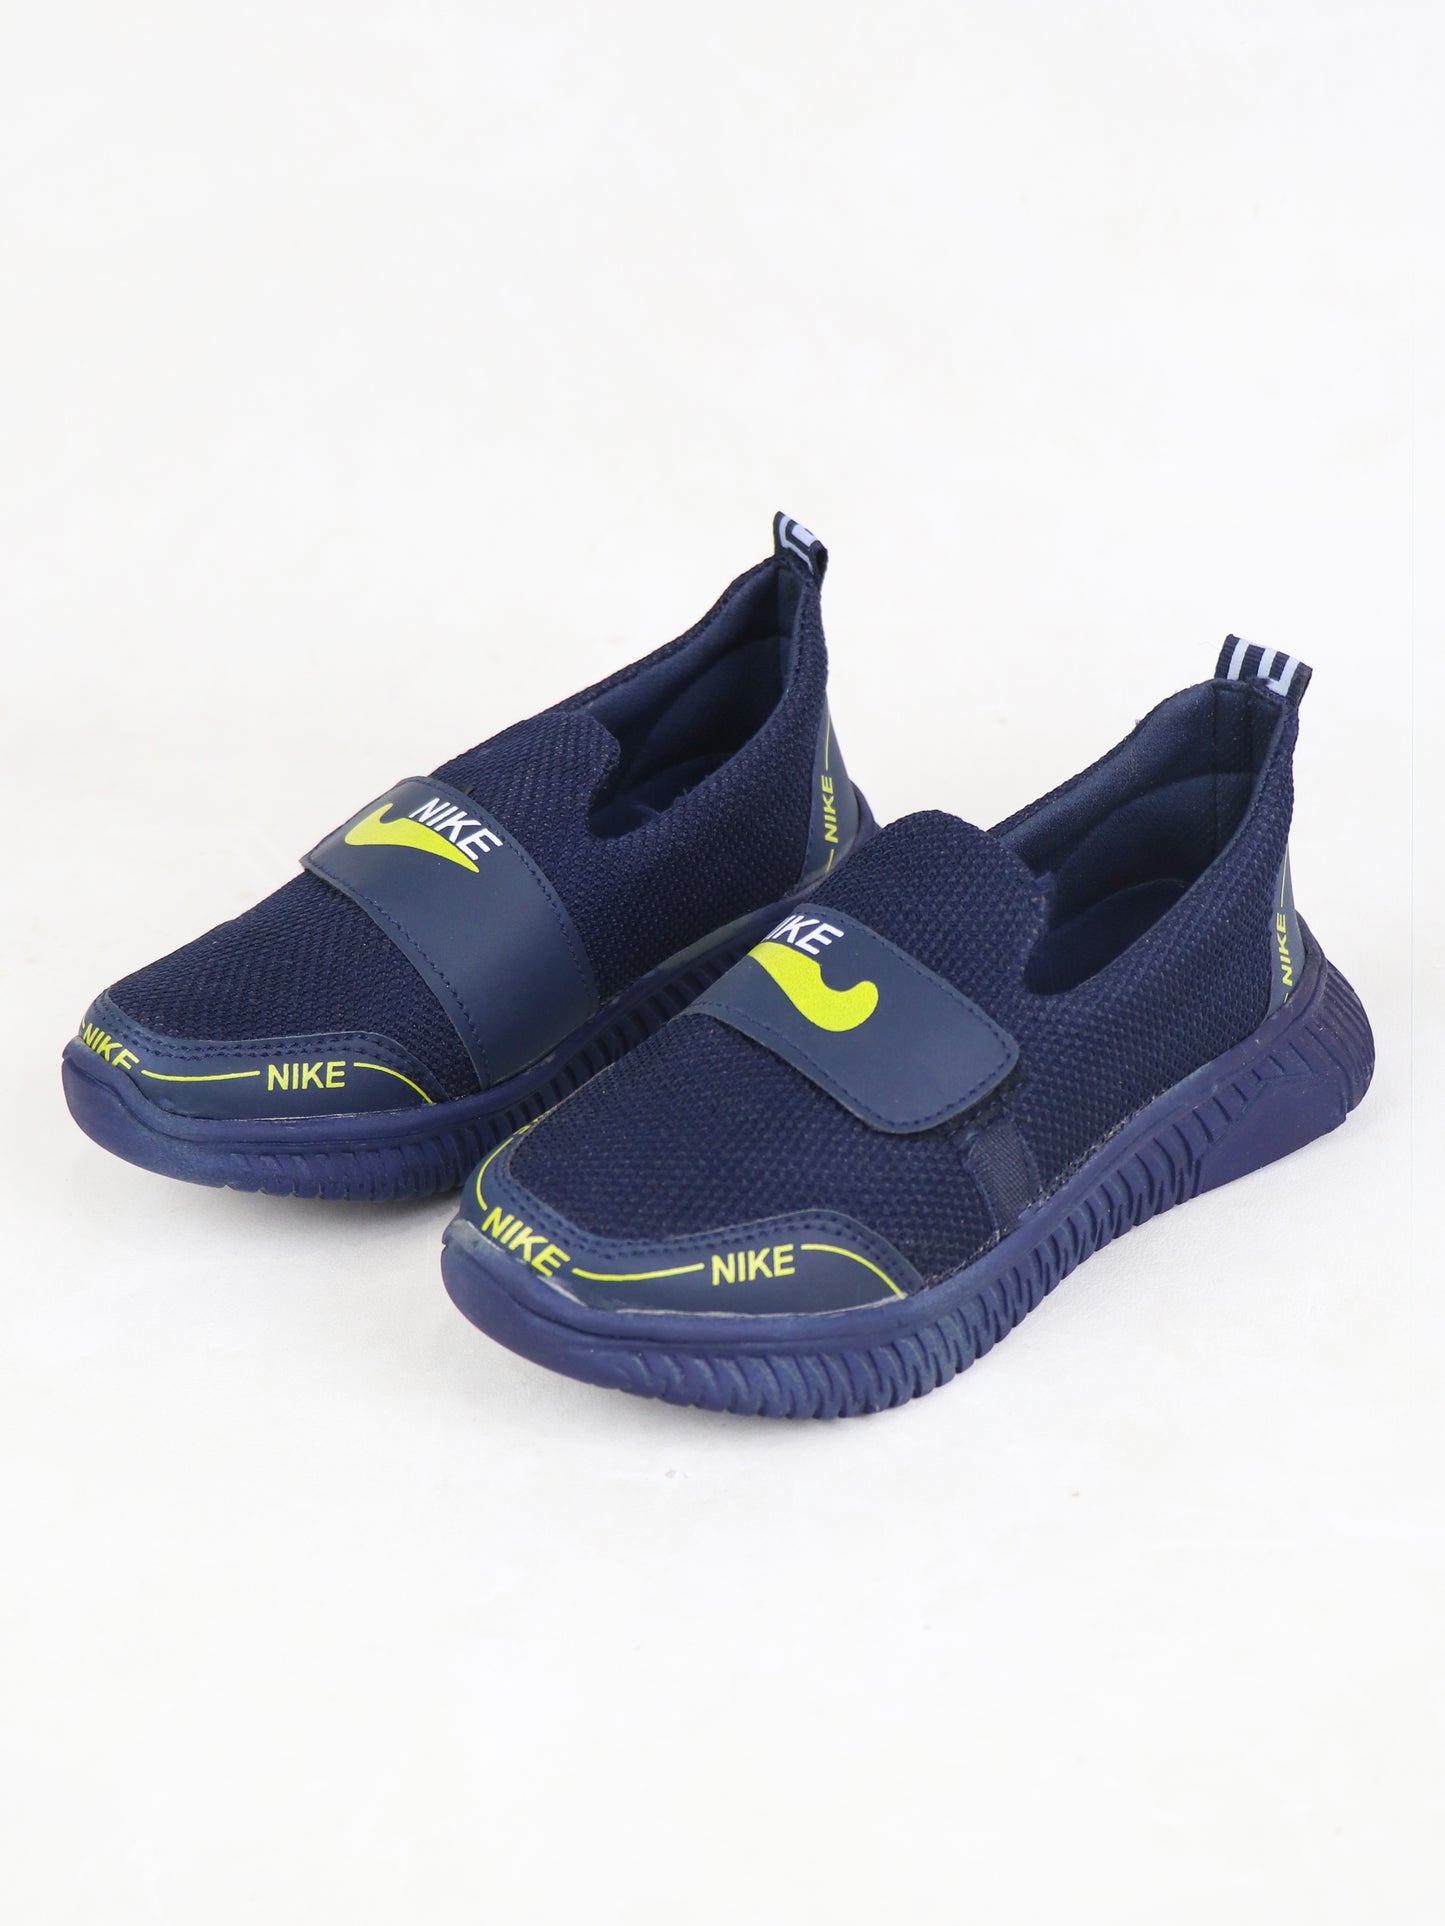 BJ17 Boys Shoes 8Yrs - 12Yrs NK Blue